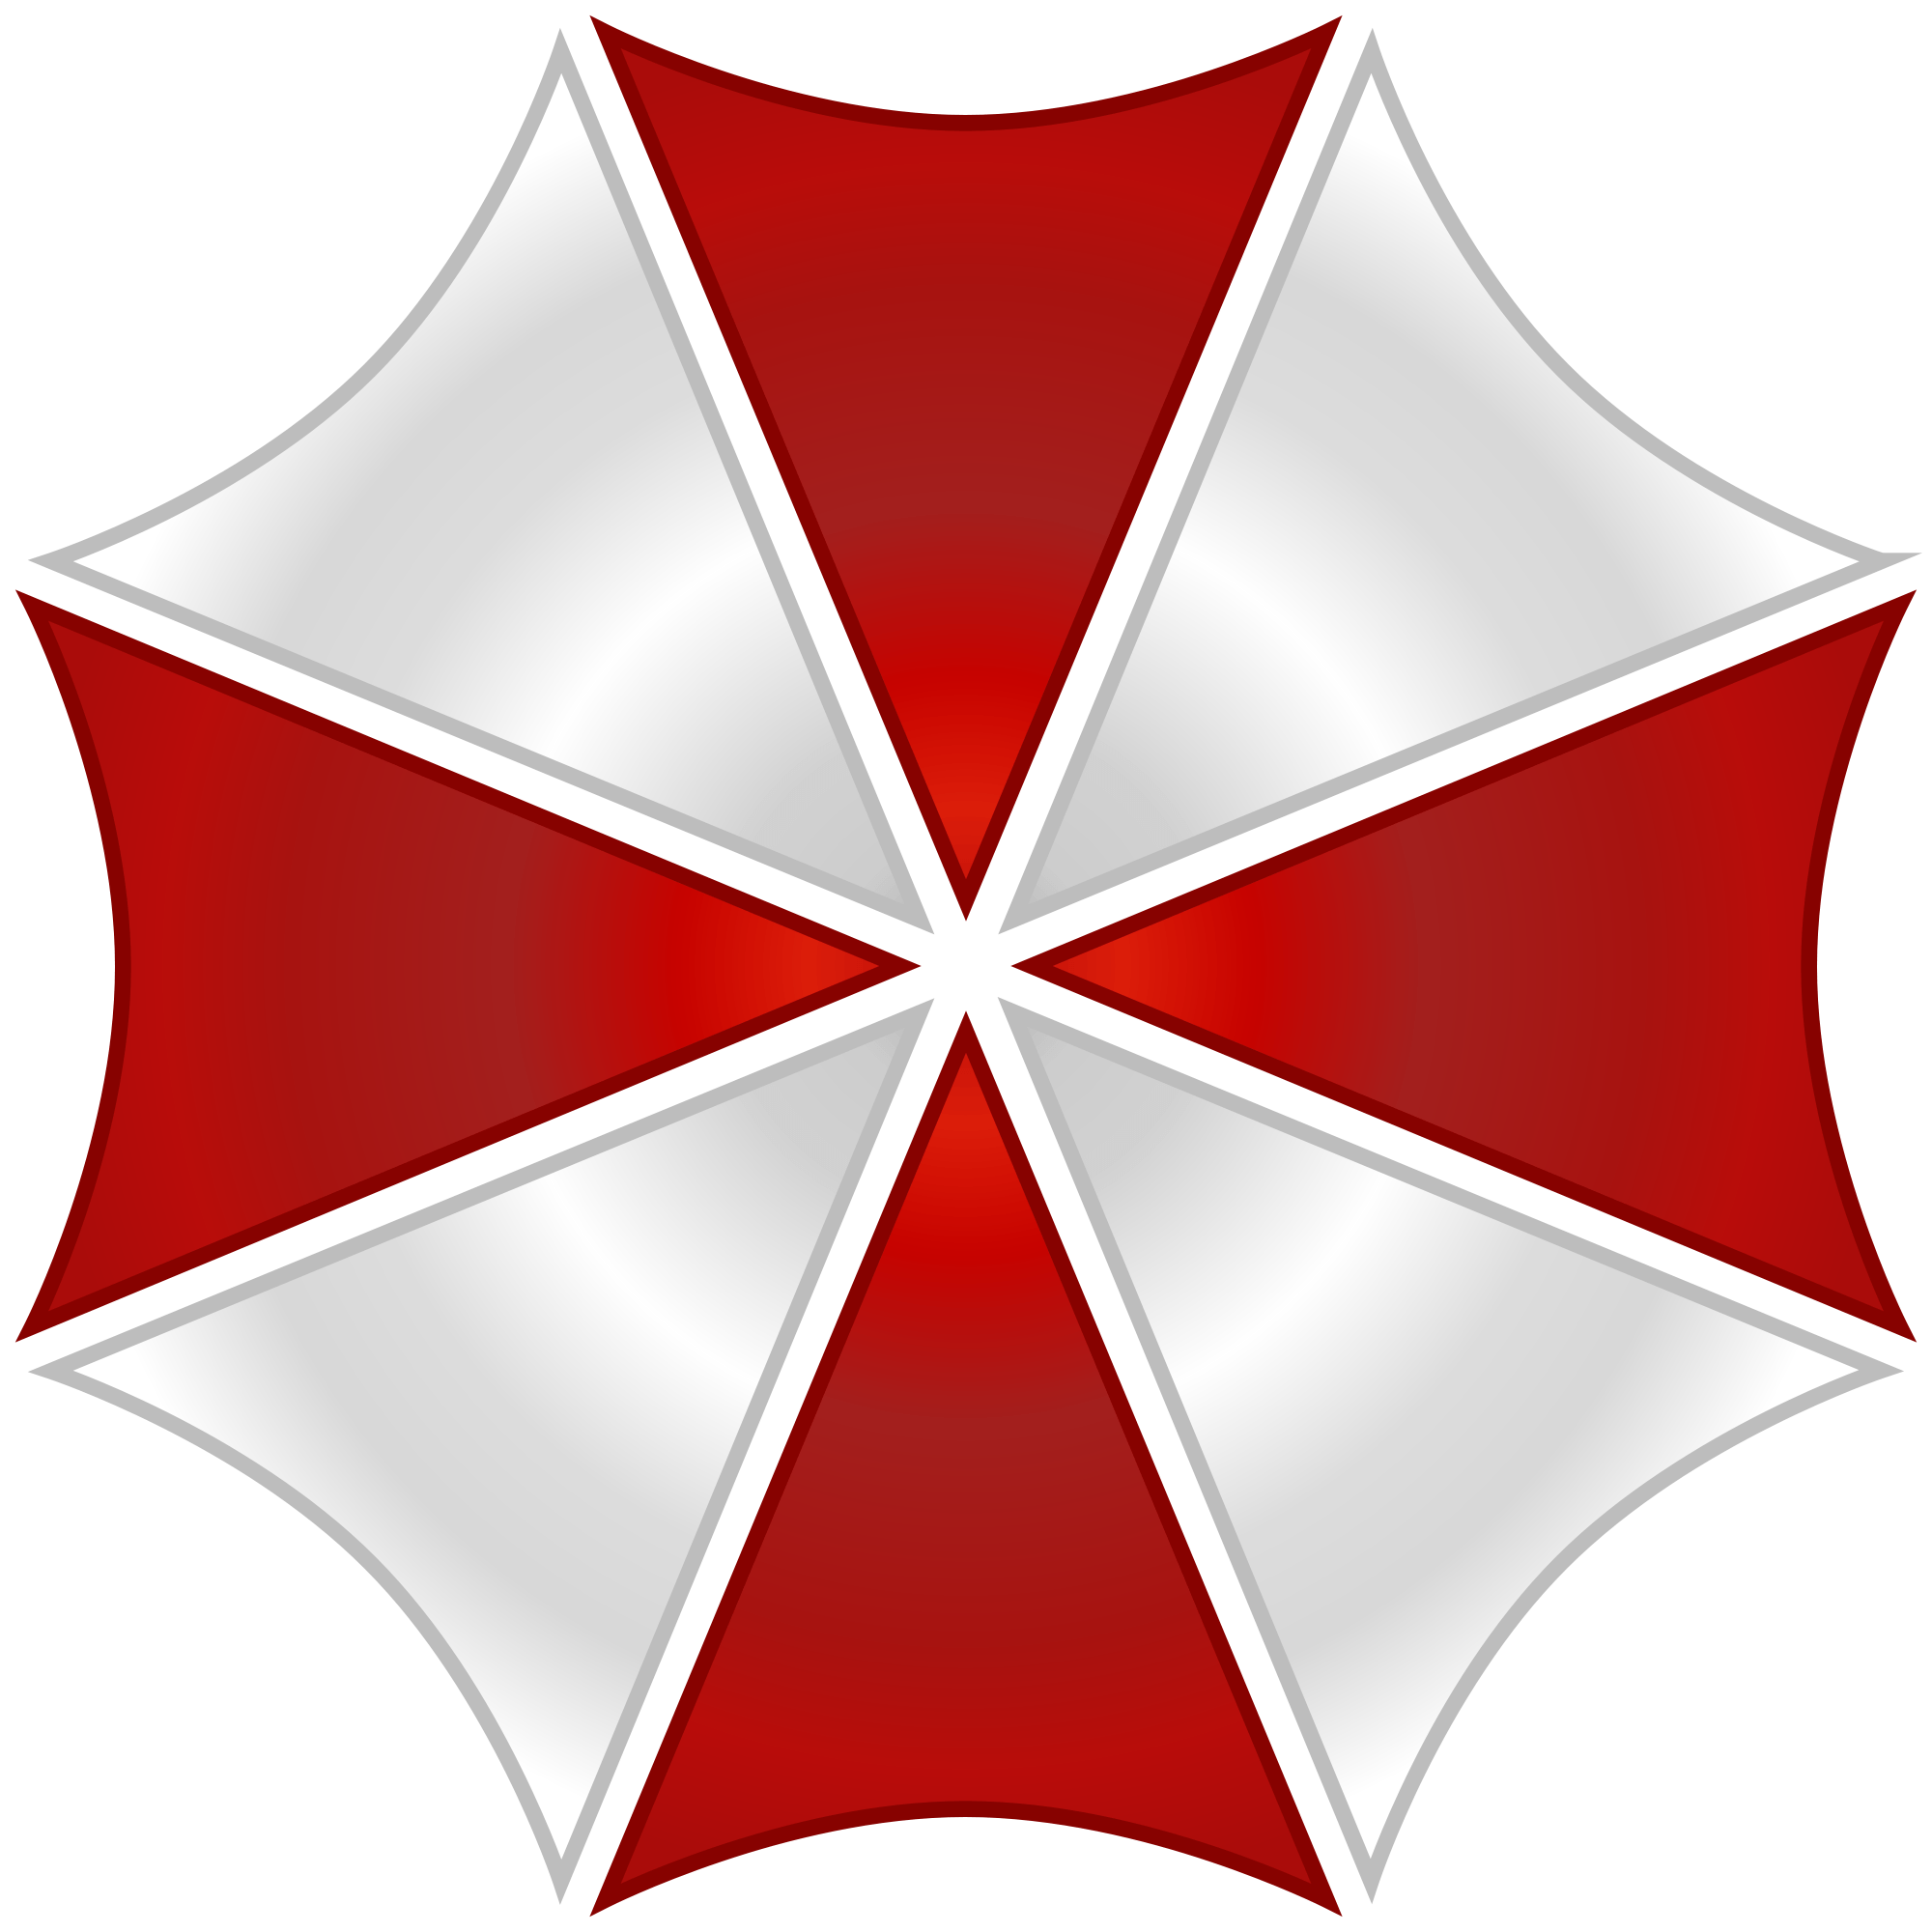 Red Umbrella Outline Logo - Free Umbrella, Download Free Clip Art, Free Clip Art on Clipart Library